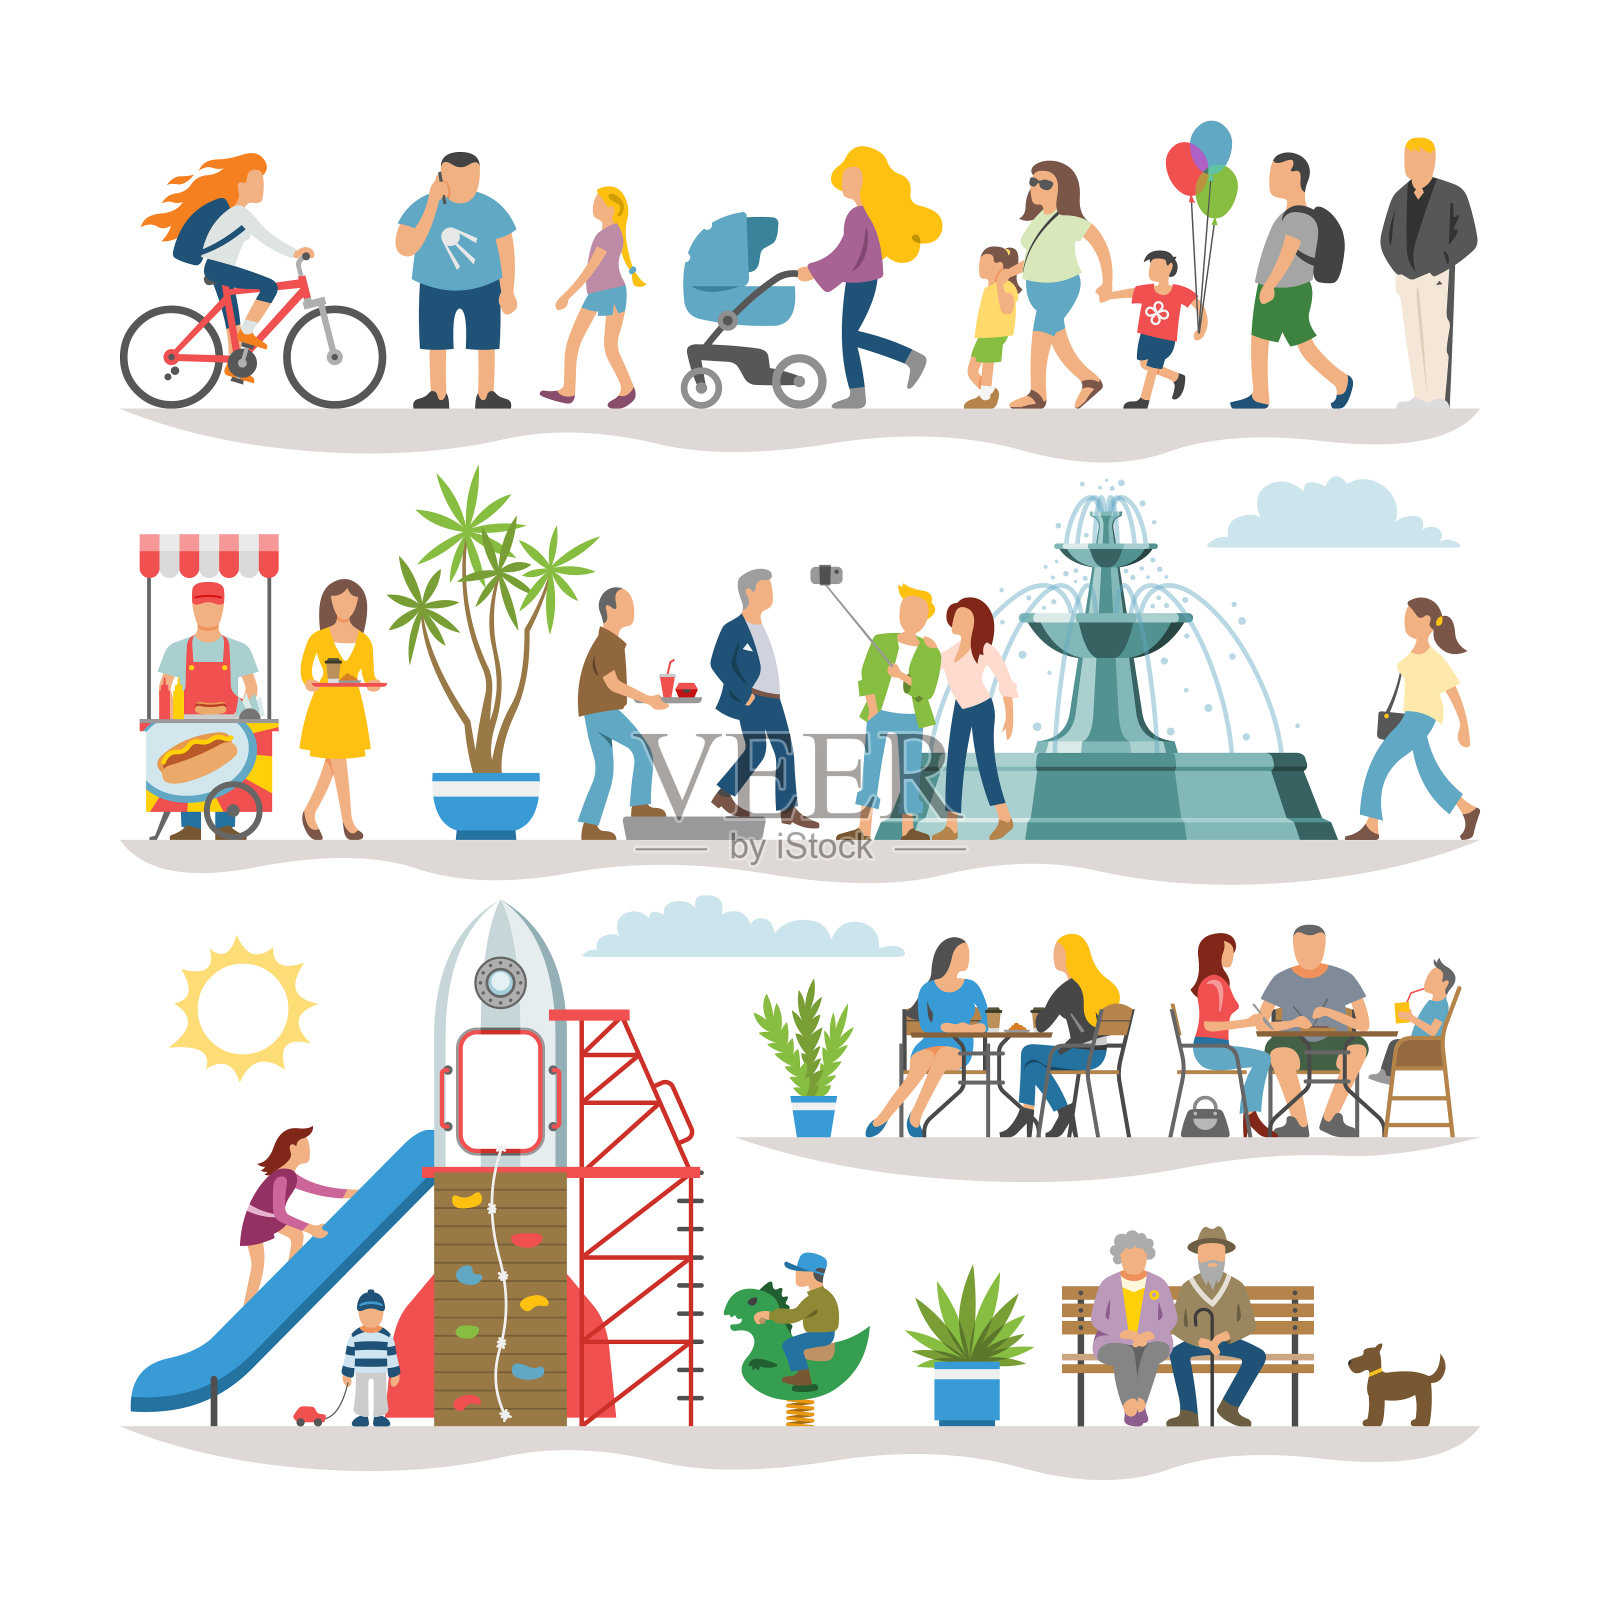 平面插图集简单的人物行走在夏天的街道或公共空间:男人，女人，孩子，女孩在自行车上，长凳，桌子，植物，喷泉，操场，食品亭。插画图片素材